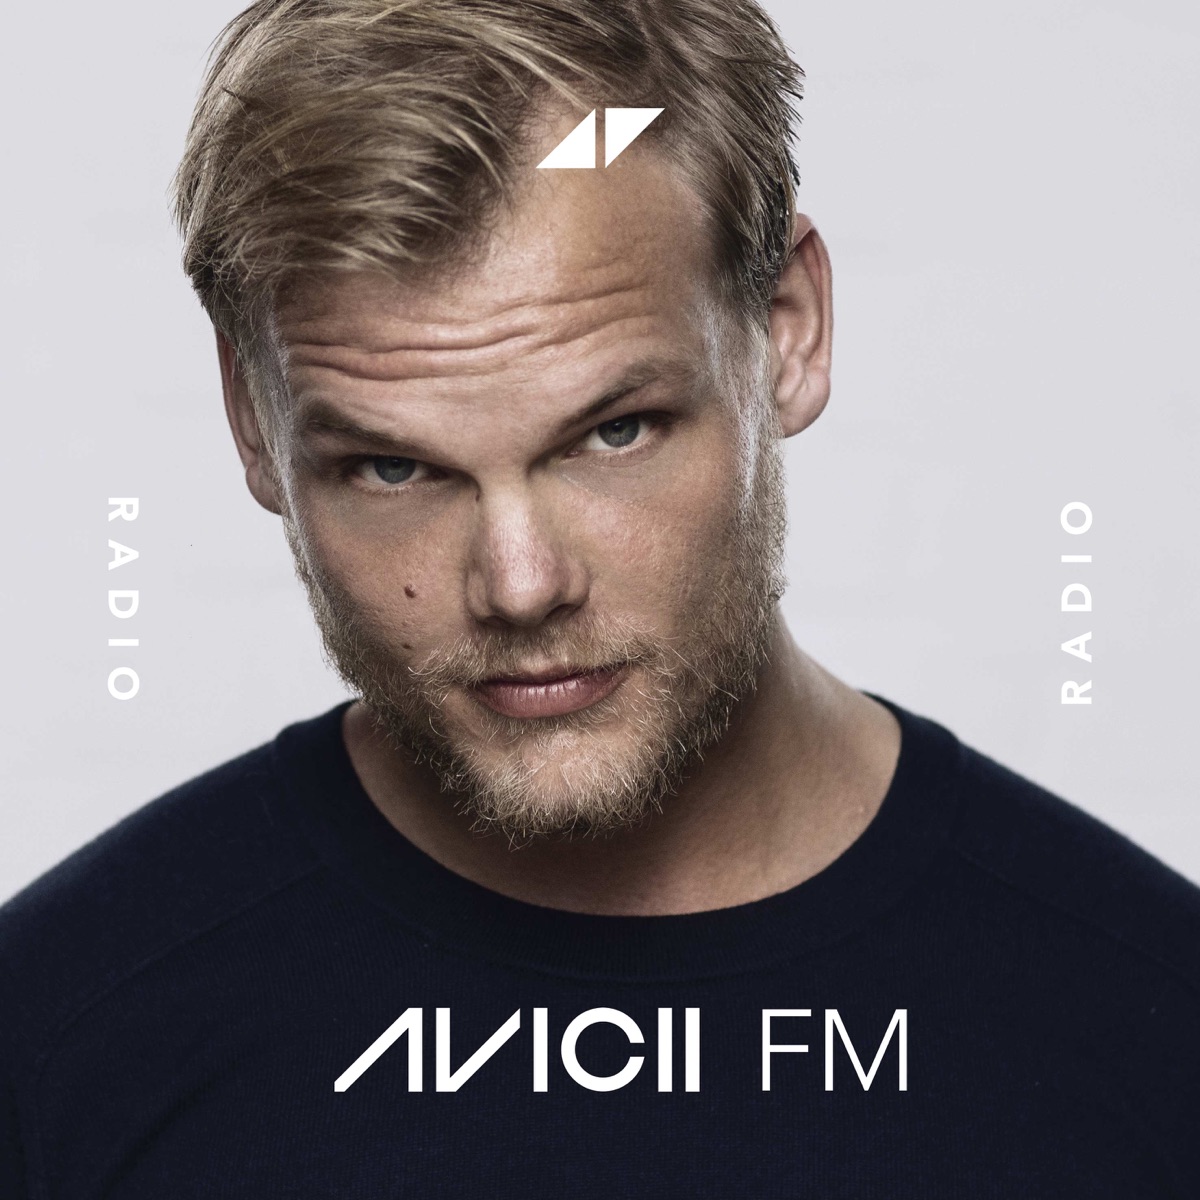 AVICII FM – Podcast – Podtail